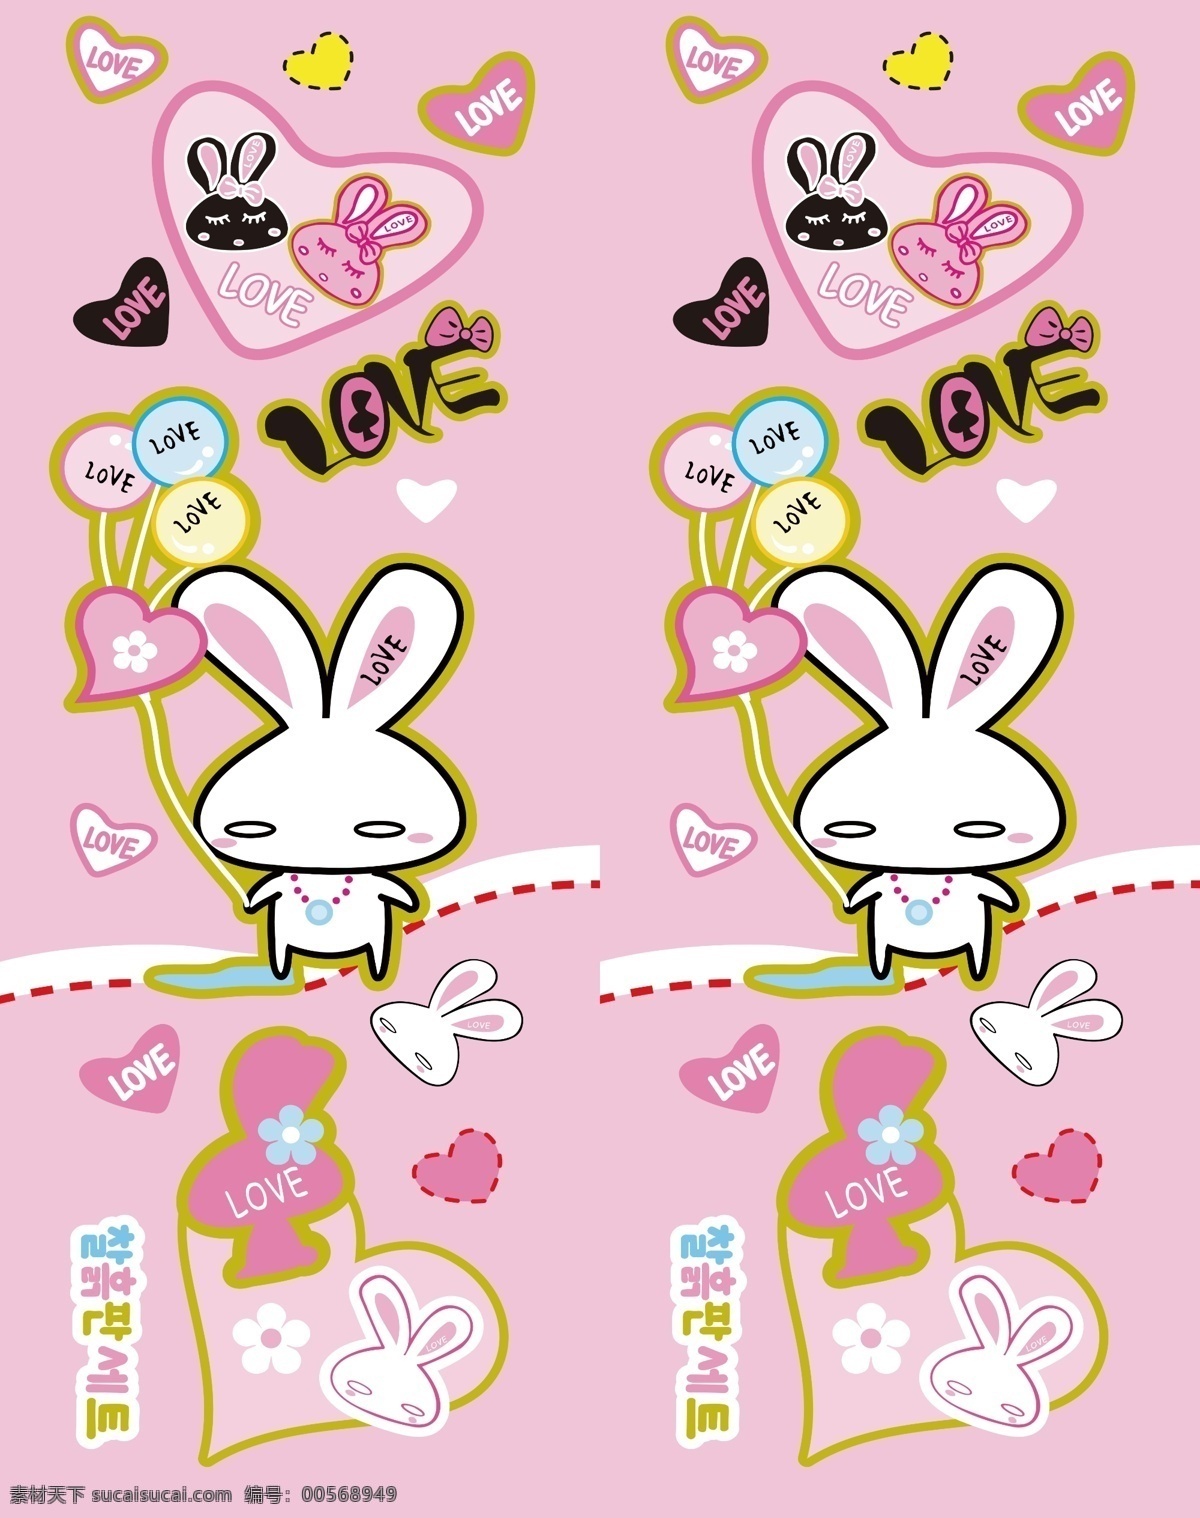 动漫动画 卡通动物 动漫风景 可爱兔子 兔子 可爱卡通 爱心 花朵 风景漫画